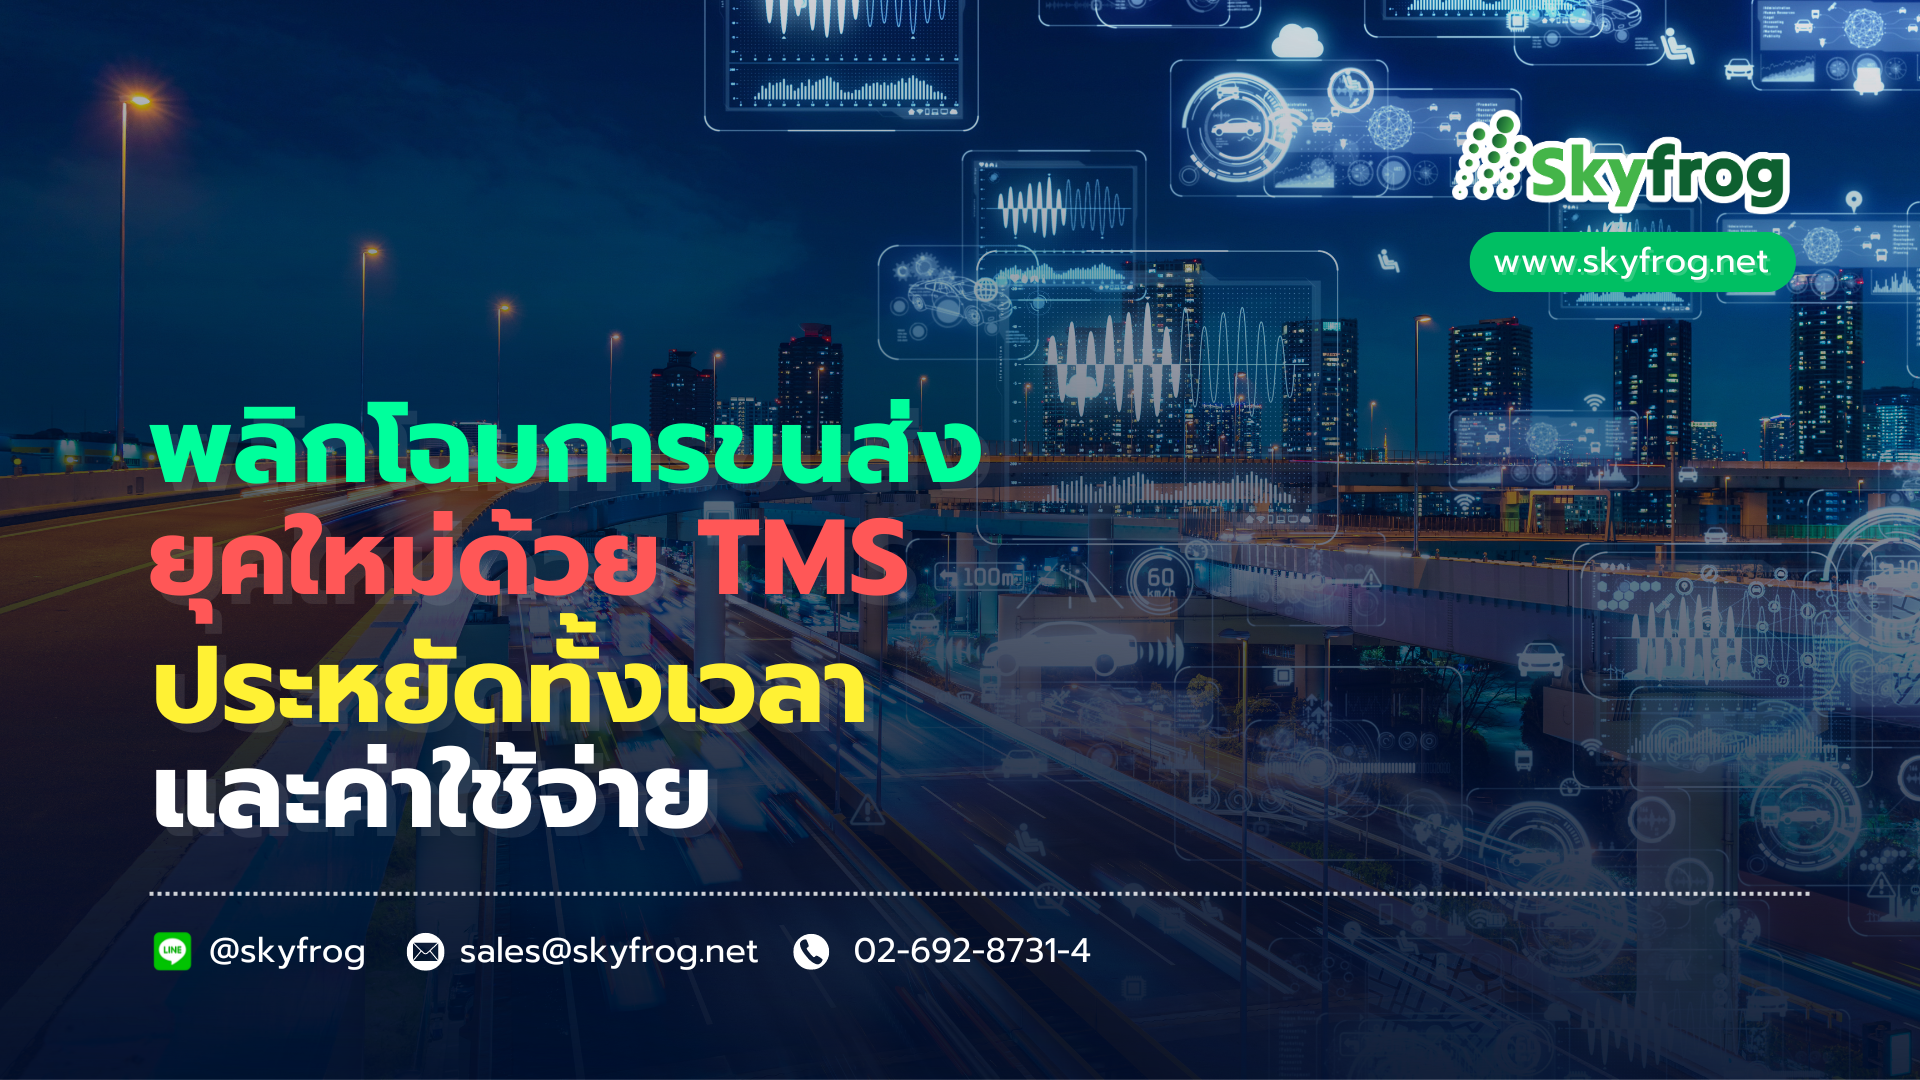 Transportation Management System (TMS)